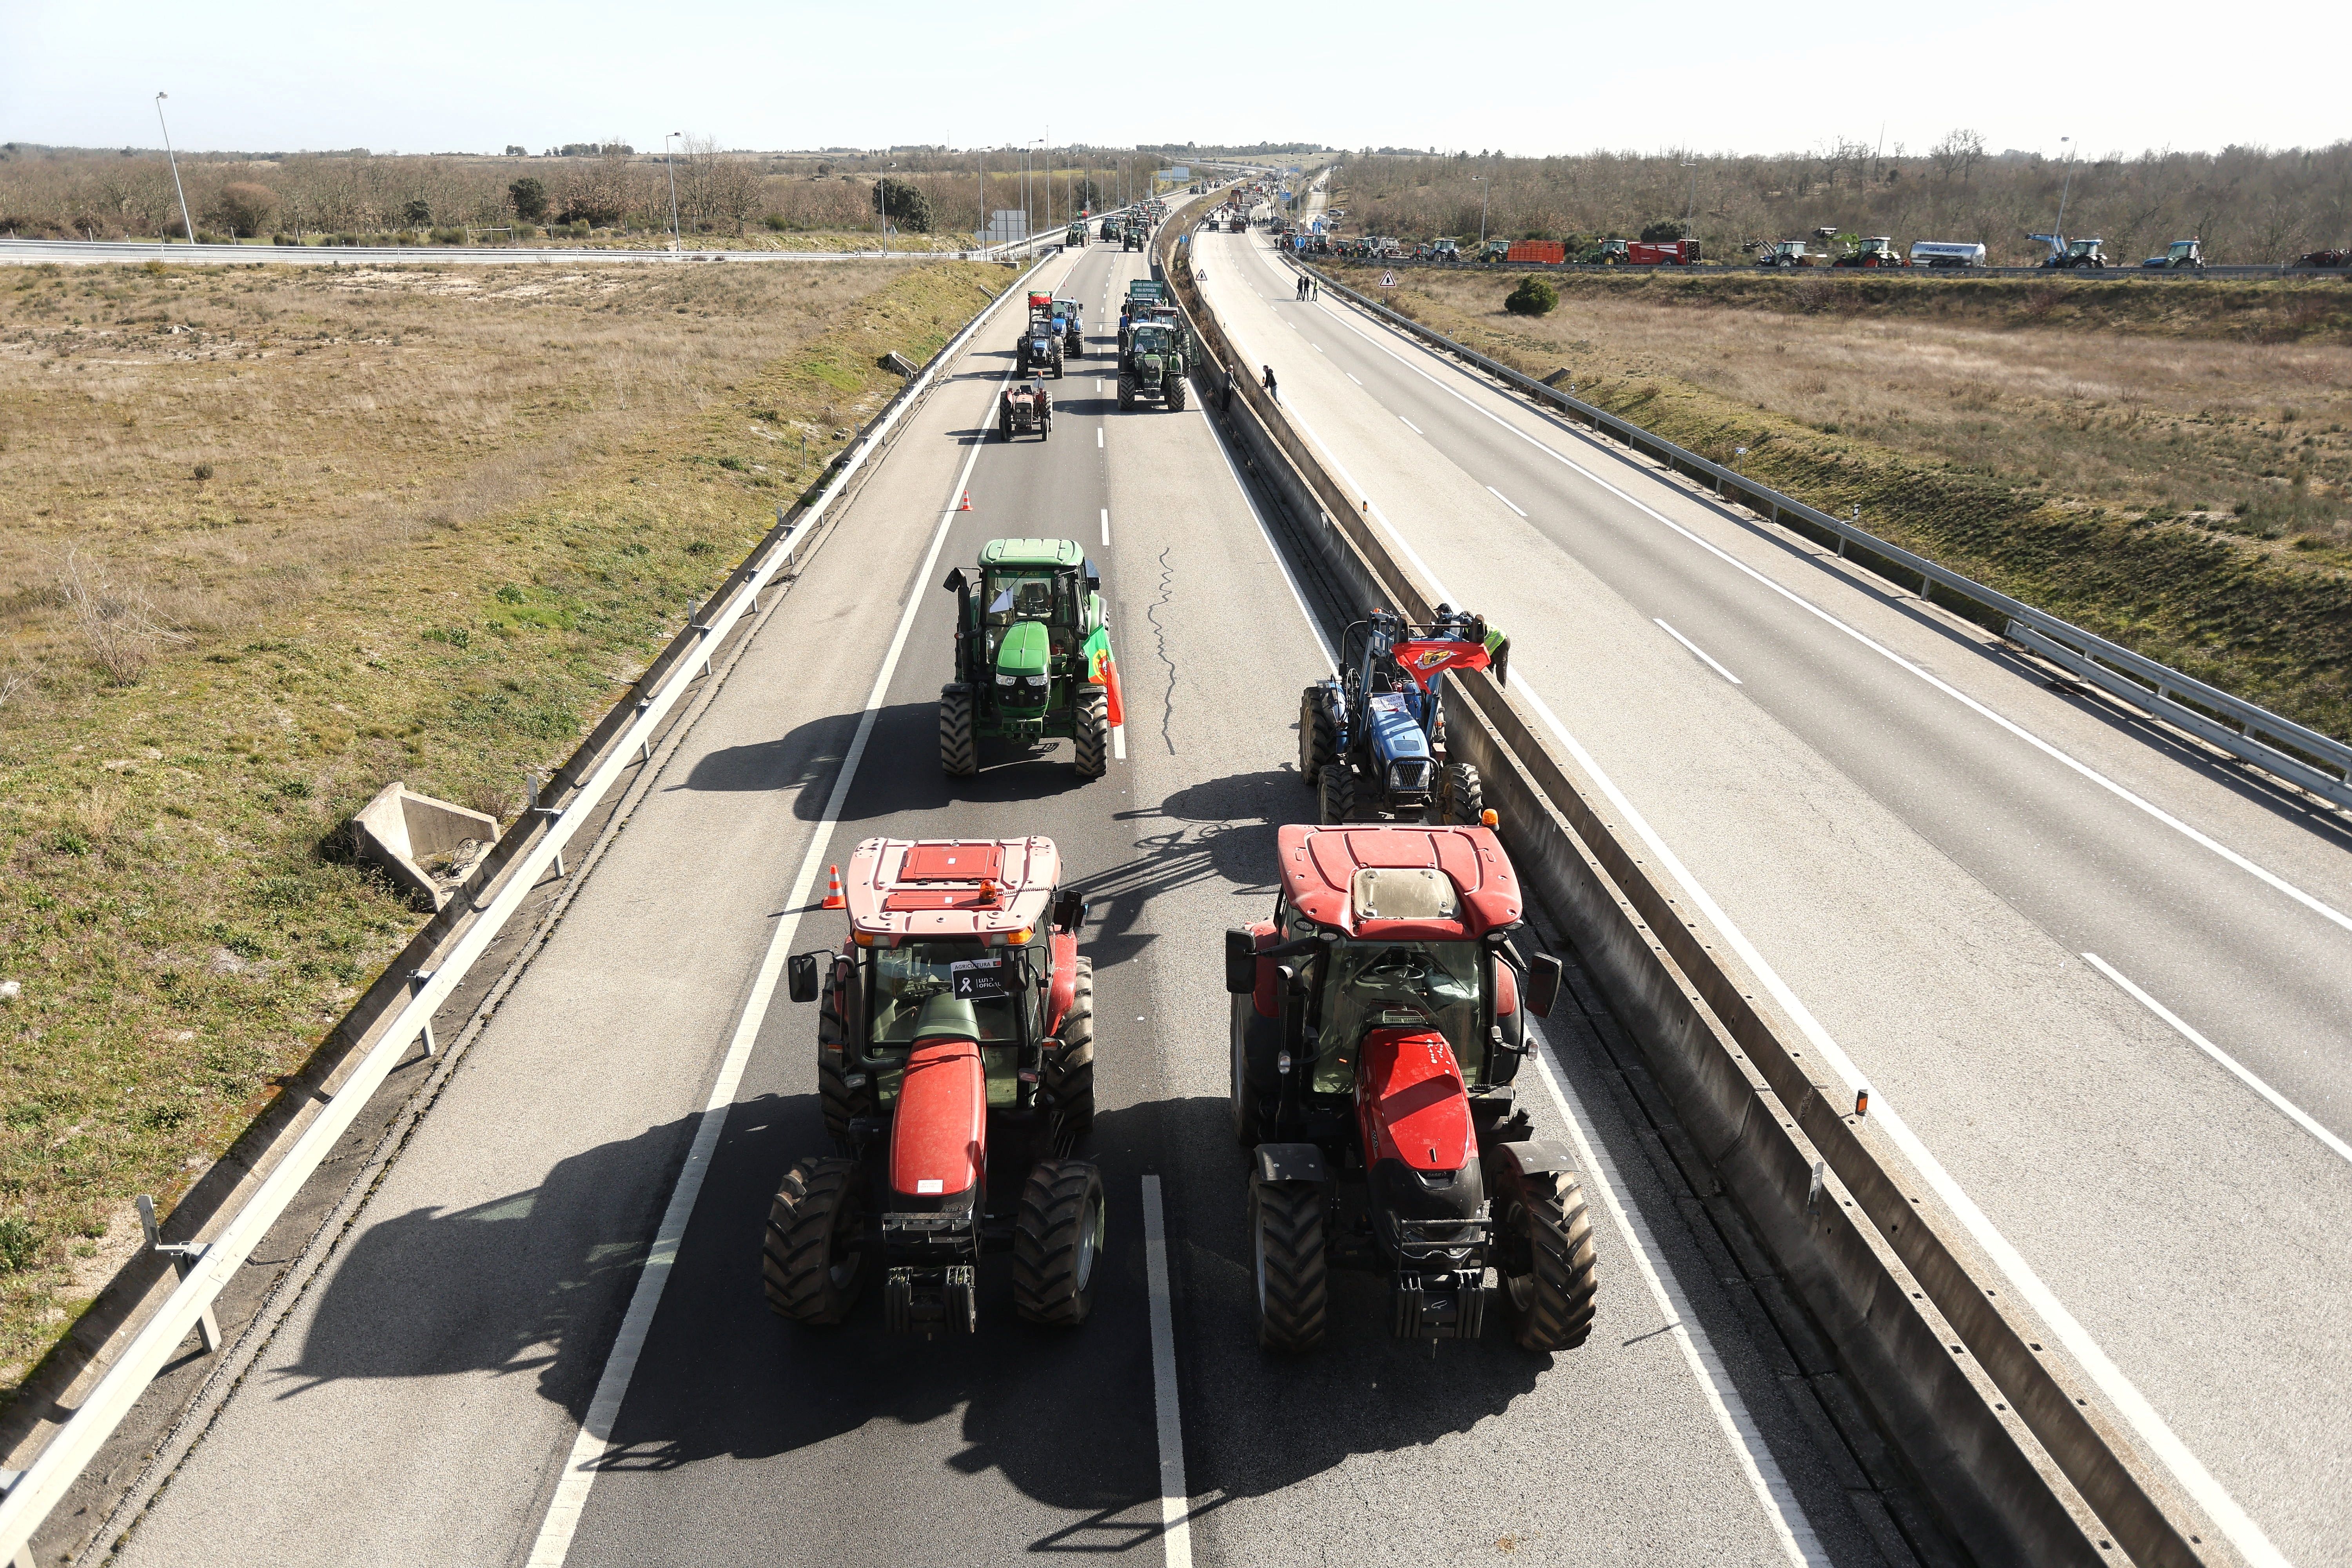 GALERÍA | Cortada la A-62 en Fuentes de Oñoro por las movilizaciones de agricultores portugueses. Vicente | ICAL